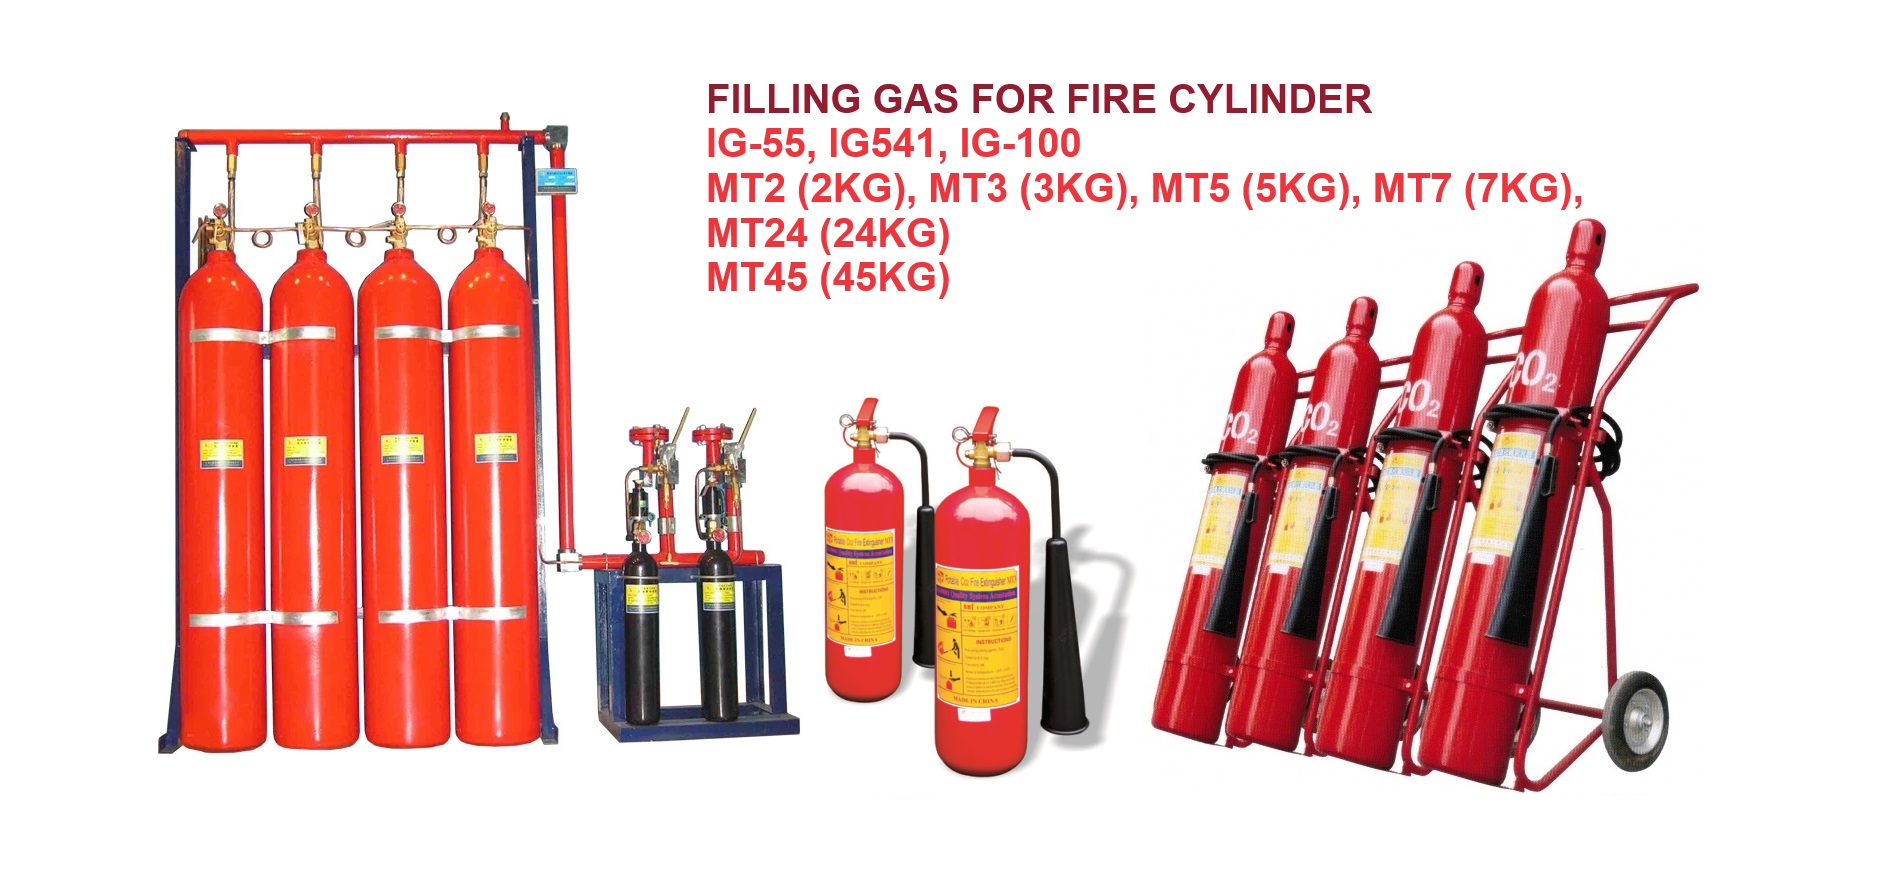 Bảng tổng hợp các sản phẩm khí chữa cháy cứu hỏa